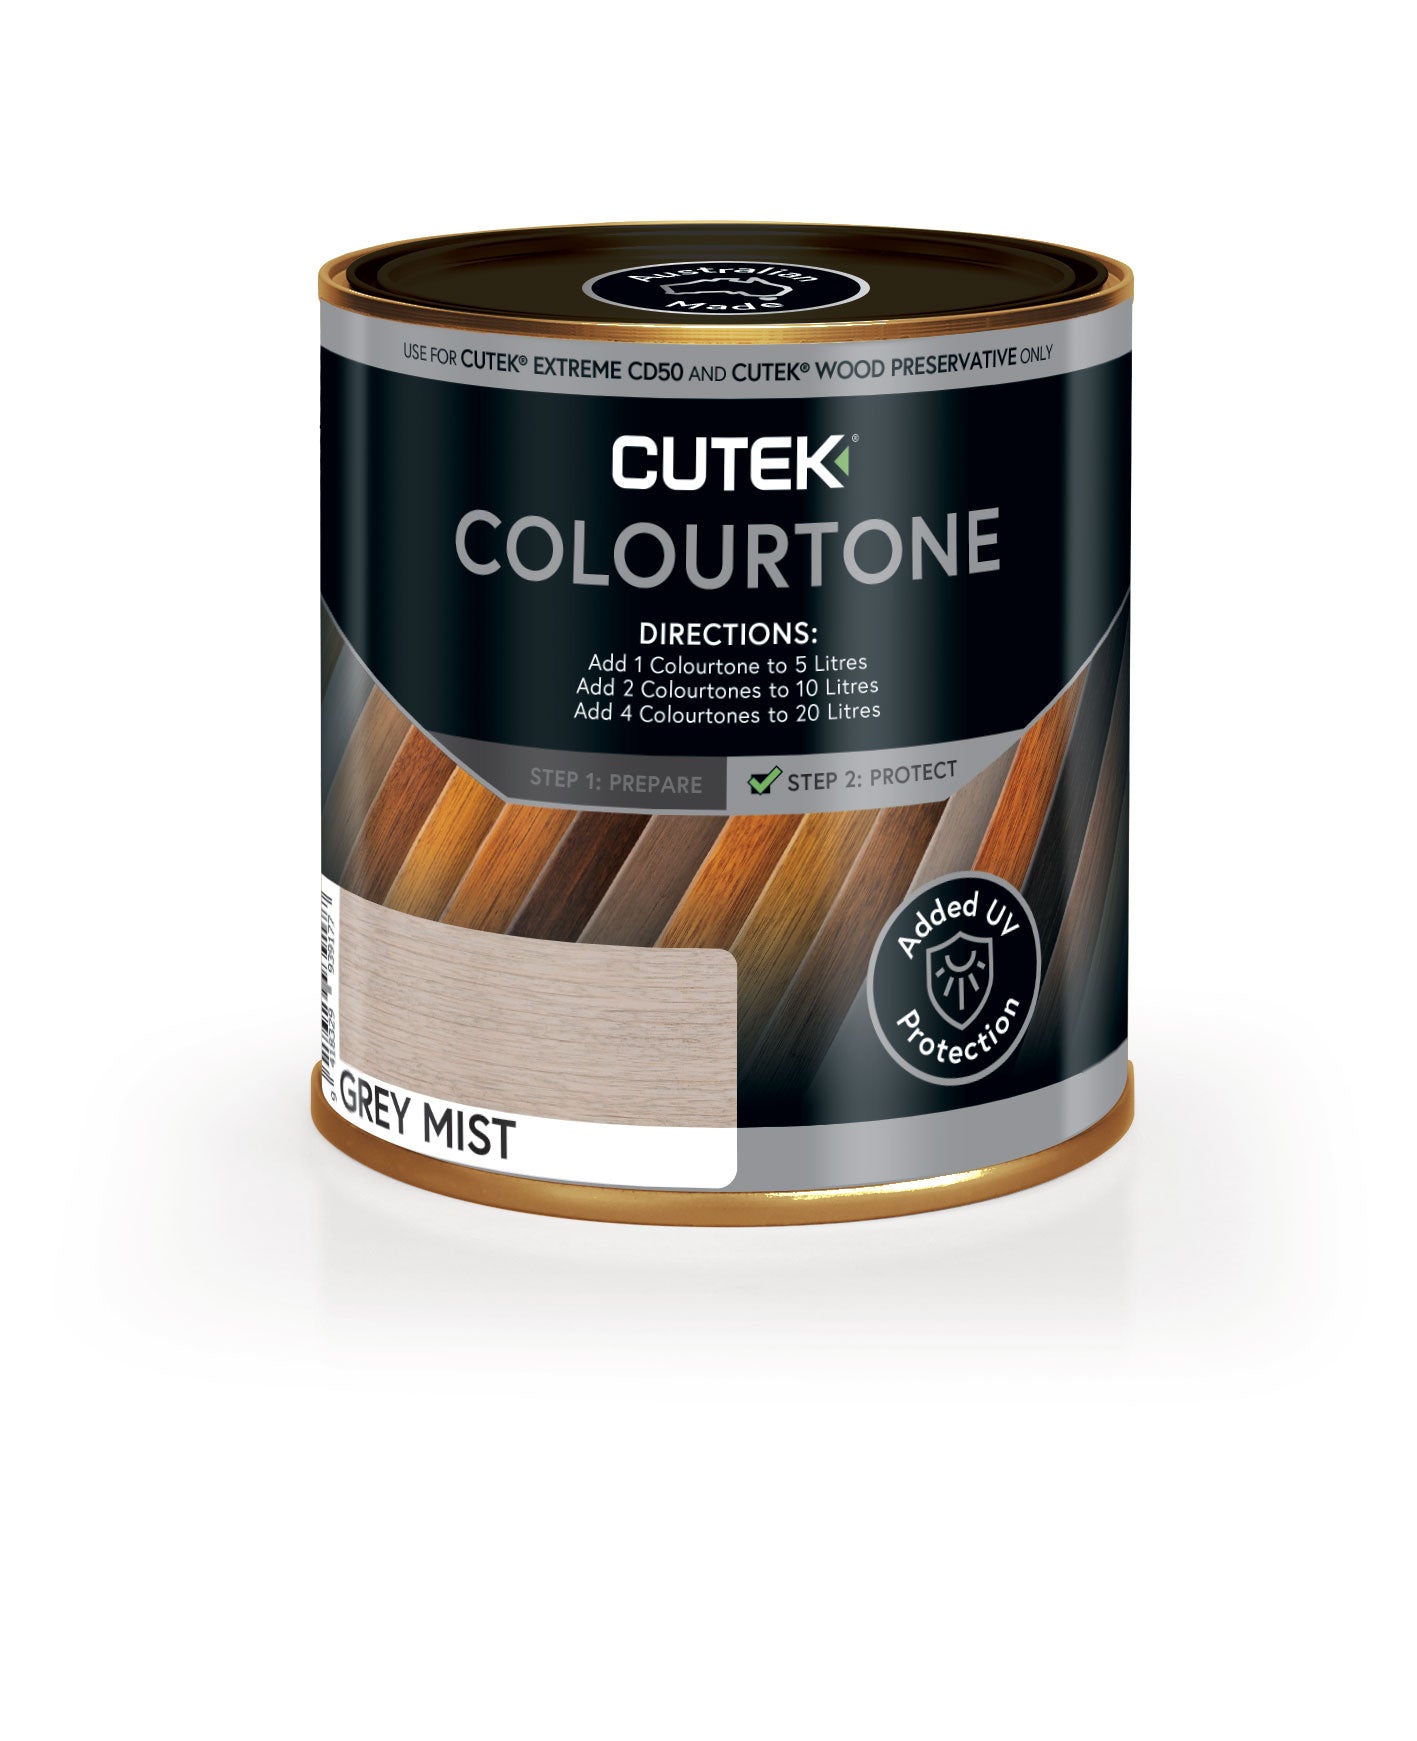 Cutek Colourtones 180ml (Colour Tones for Cutek Extreme CD50)